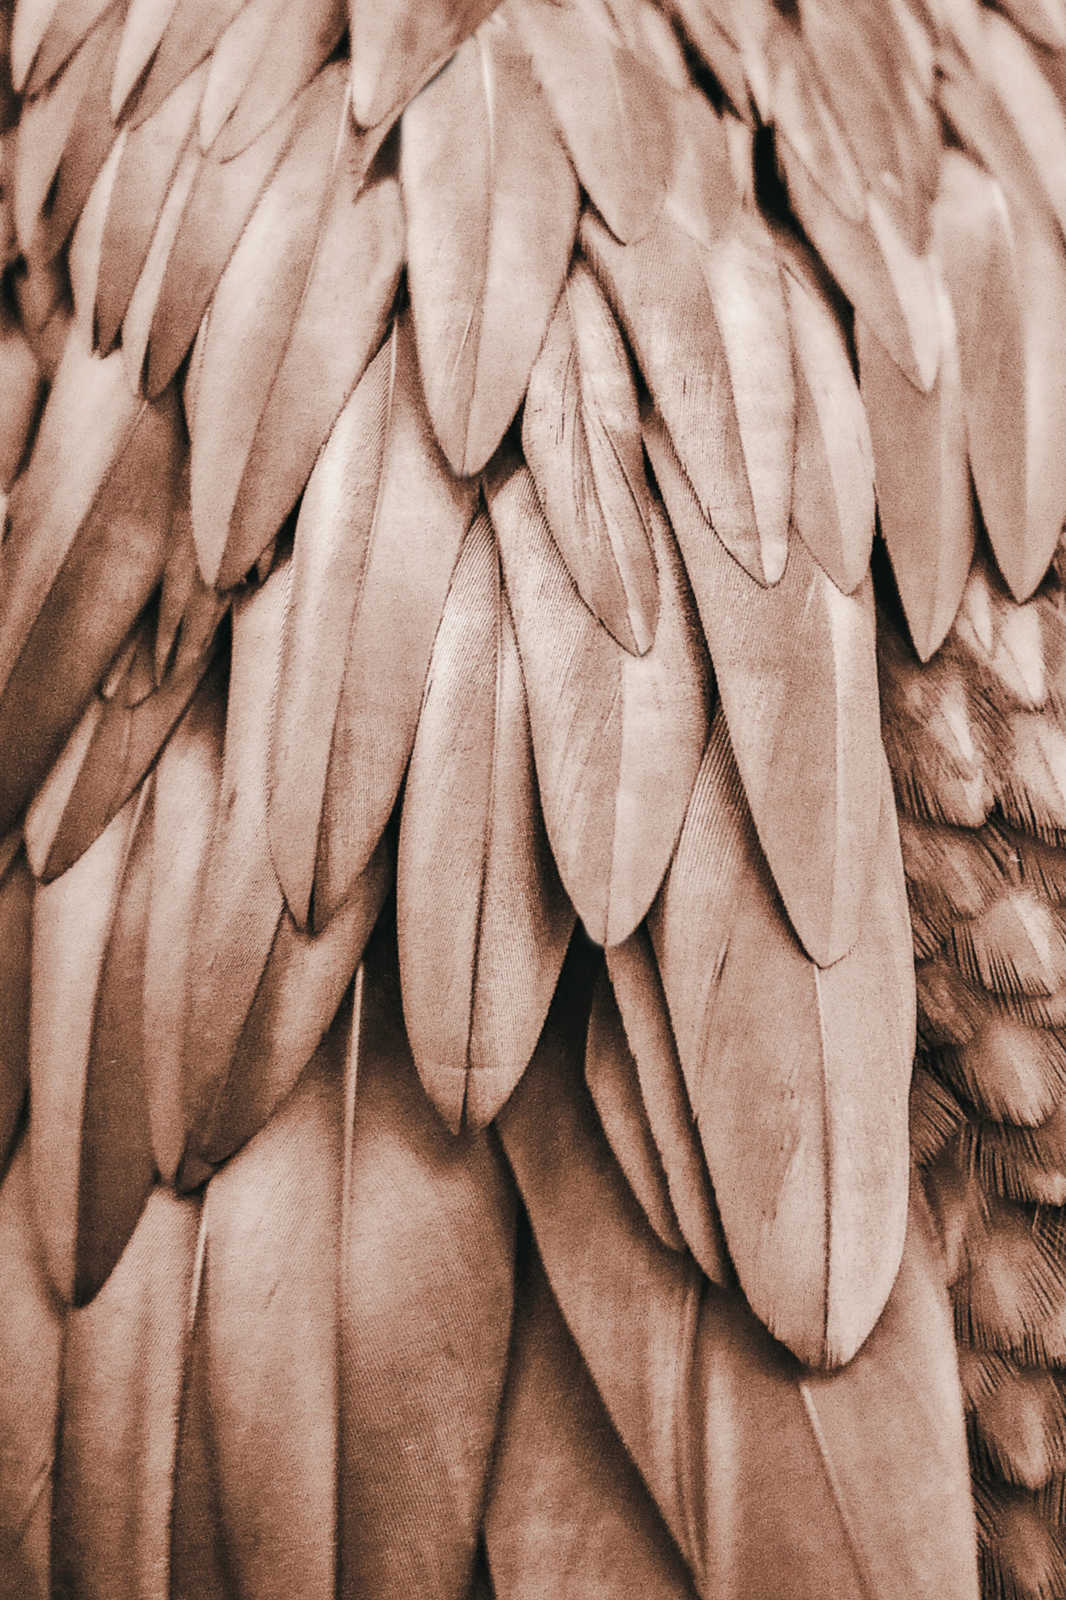             Cuadro Alas de pluma en marrón sepia - 1,20 m x 0,80 m
        